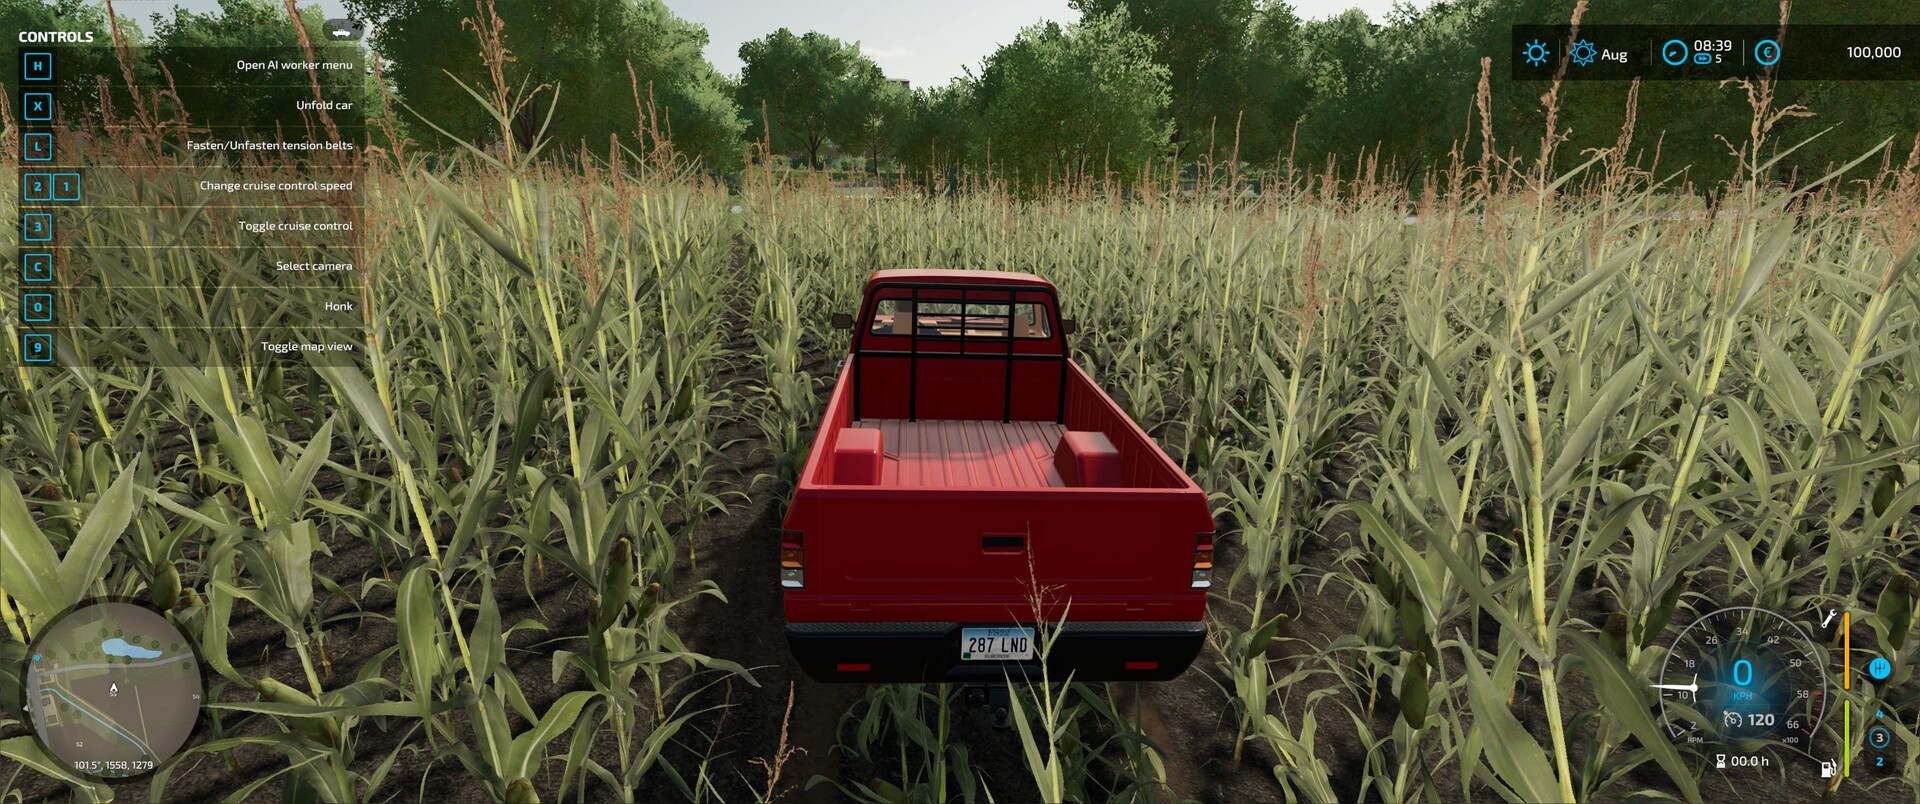 Farming Simulator 22 Análise - Gamereactor